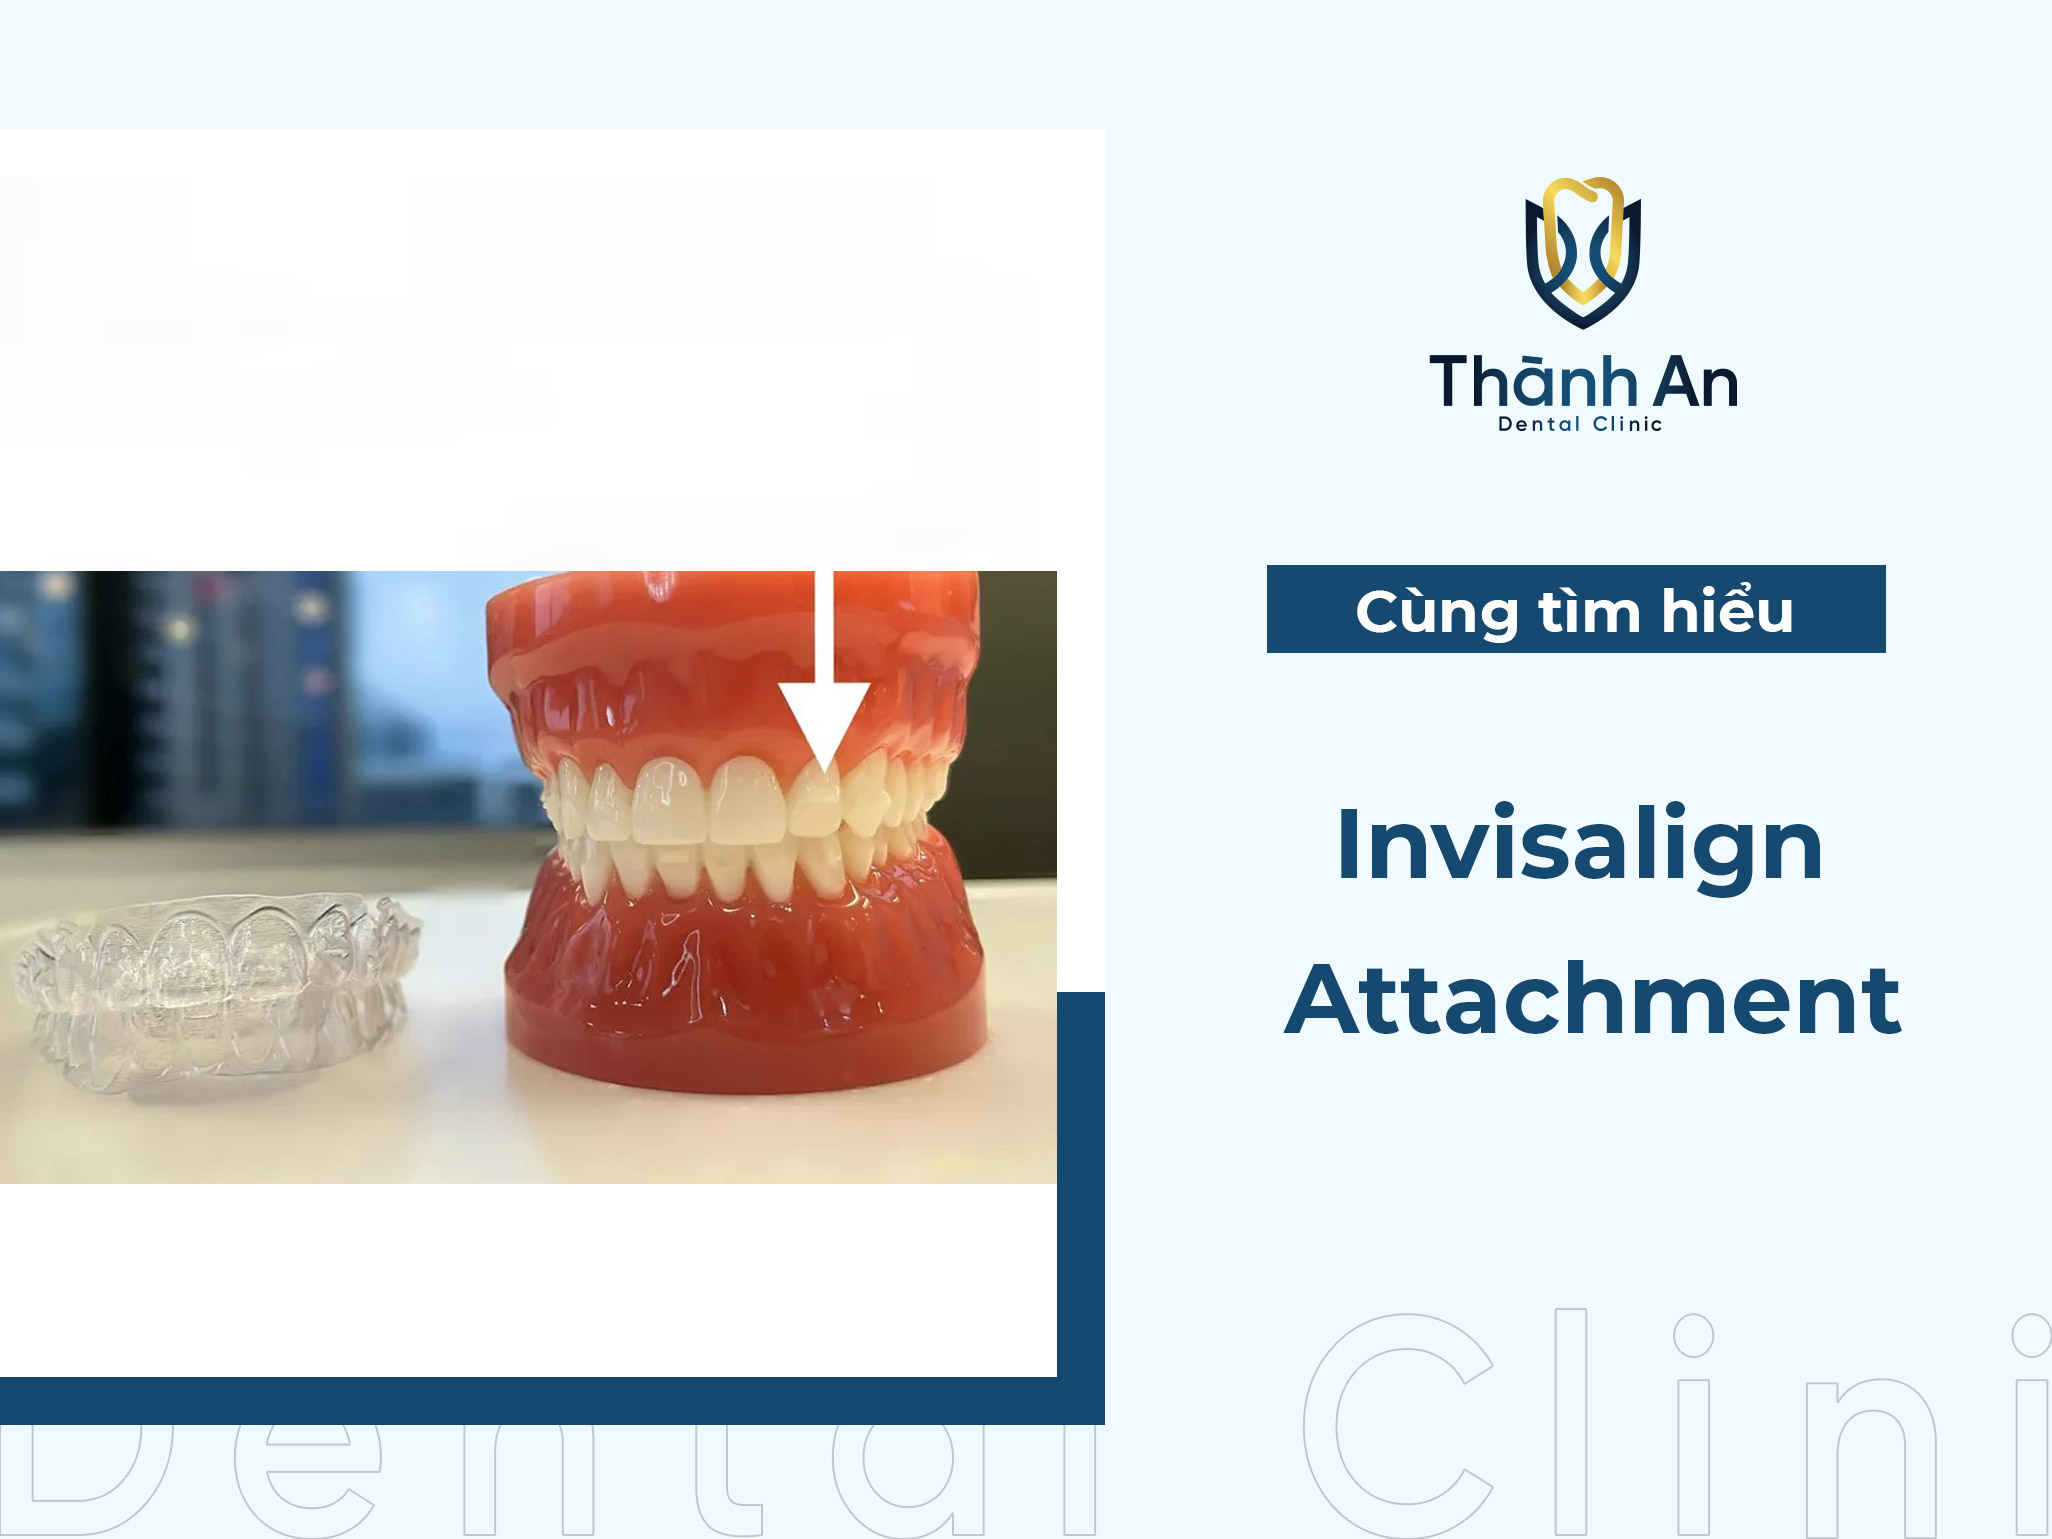 Invisalign Attachment - Công nghệ nâng cao hiệu quả niềng răng